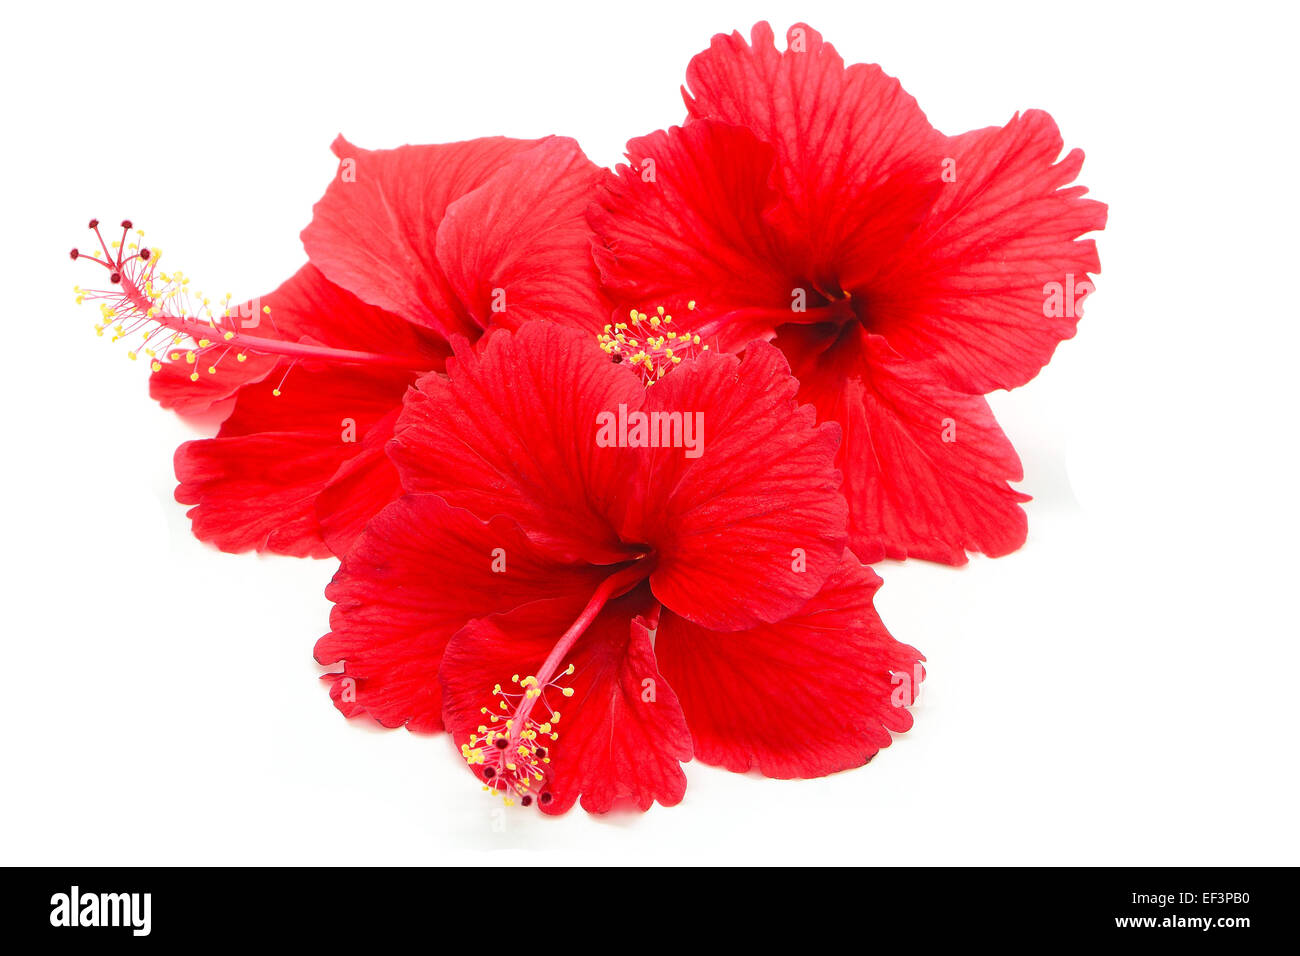 Bel rosso fiori di ibisco, isolato su sfondo bianco Foto Stock